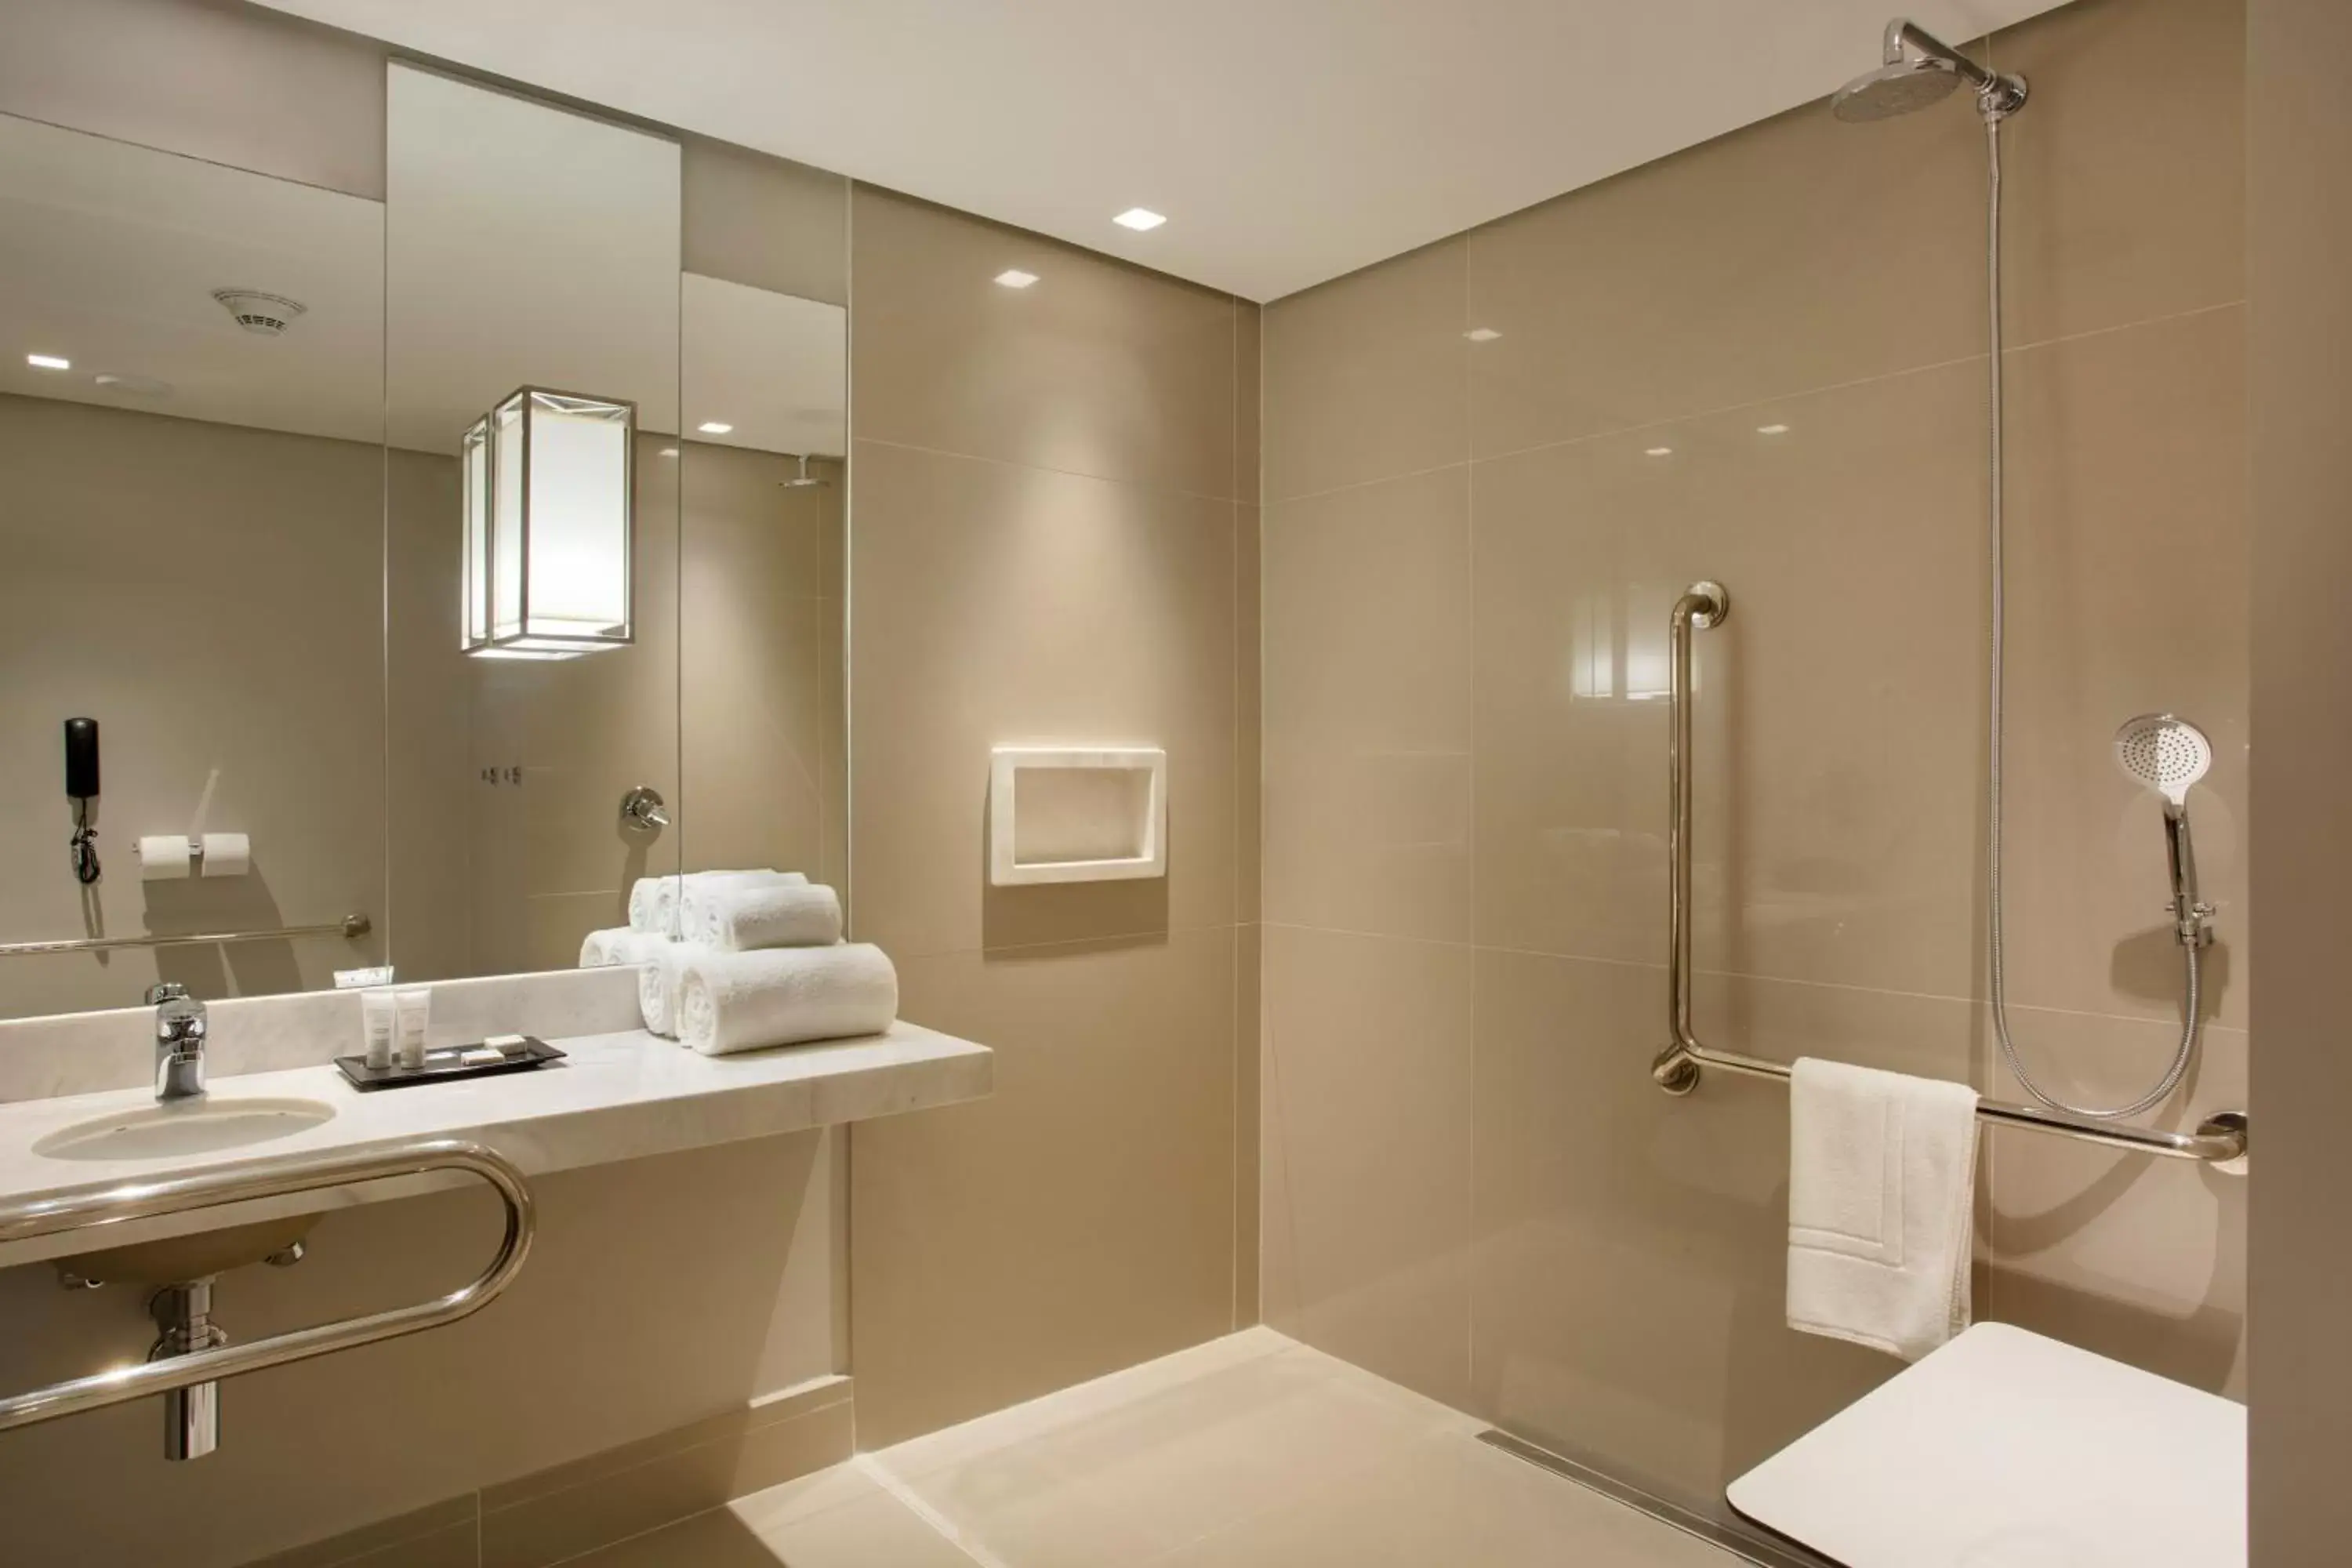 Property building, Bathroom in Venit Mio Hotel